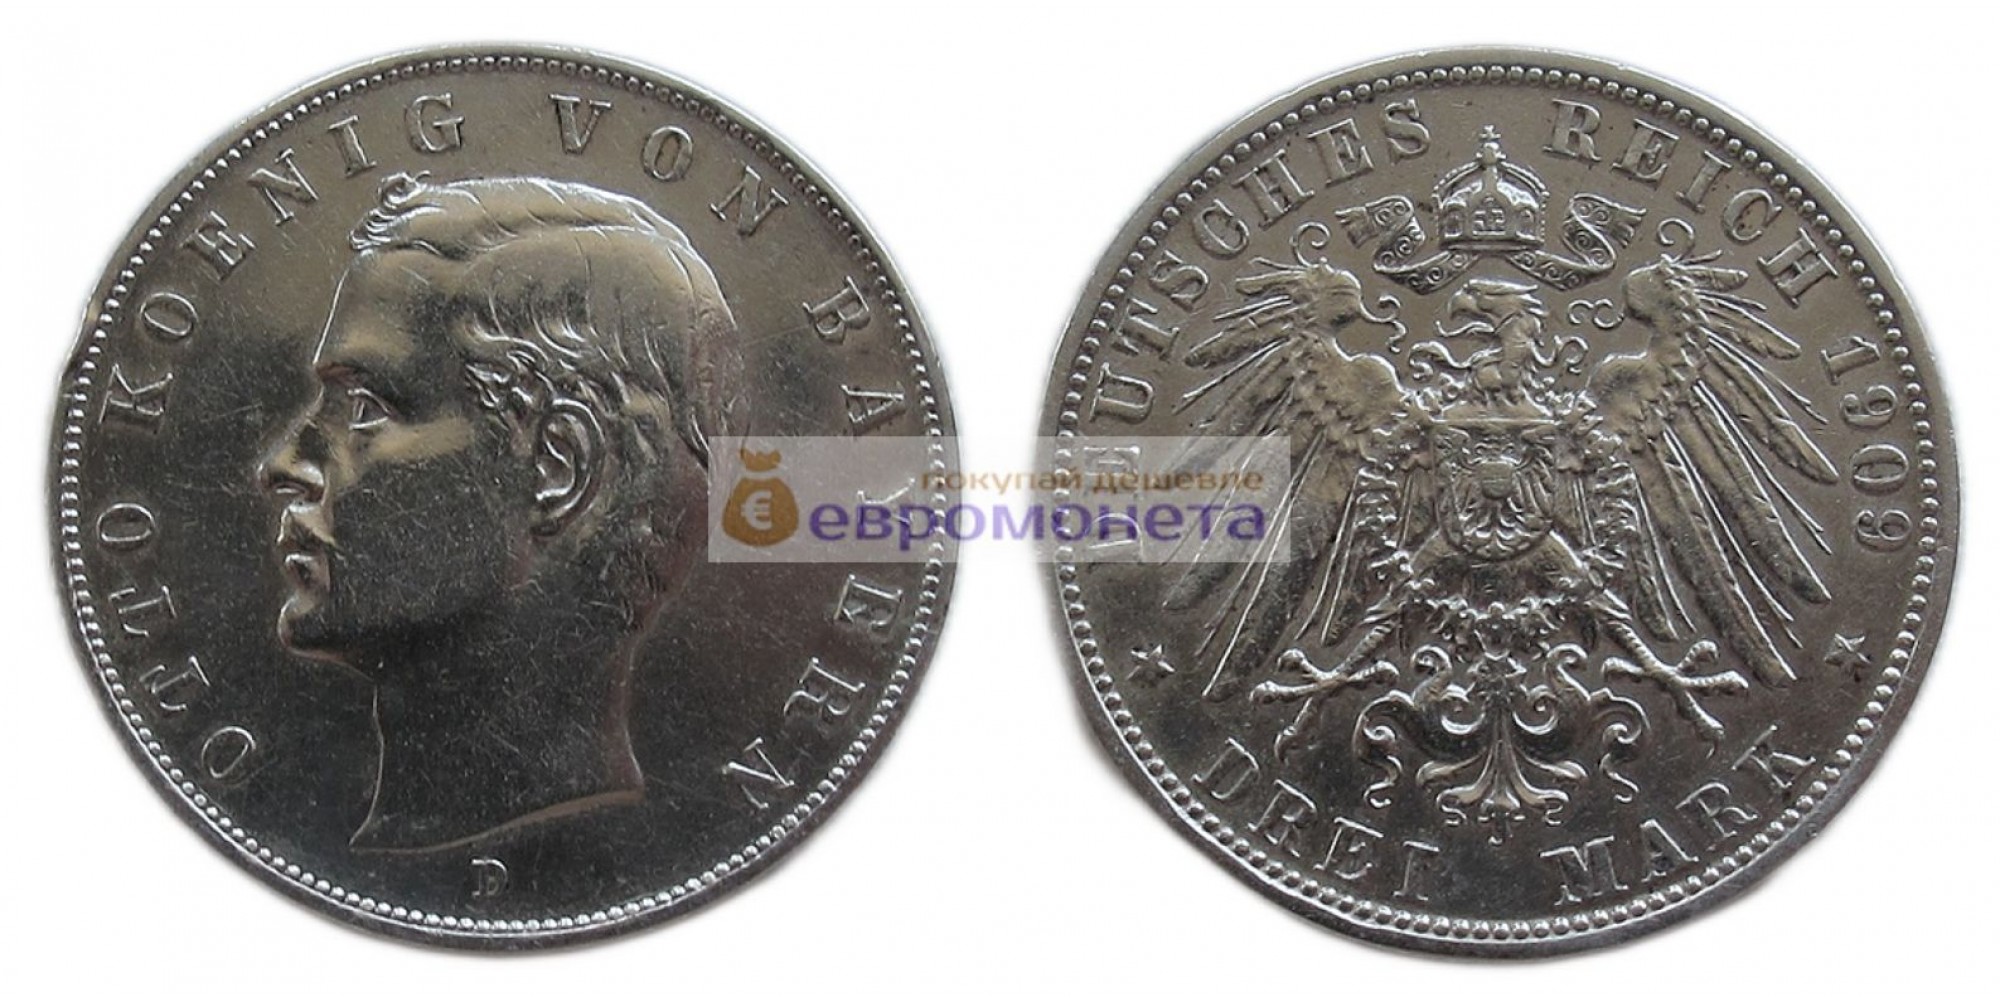 Германская империя Бавария 3 марки 1909 год "D" Отто. Серебро.